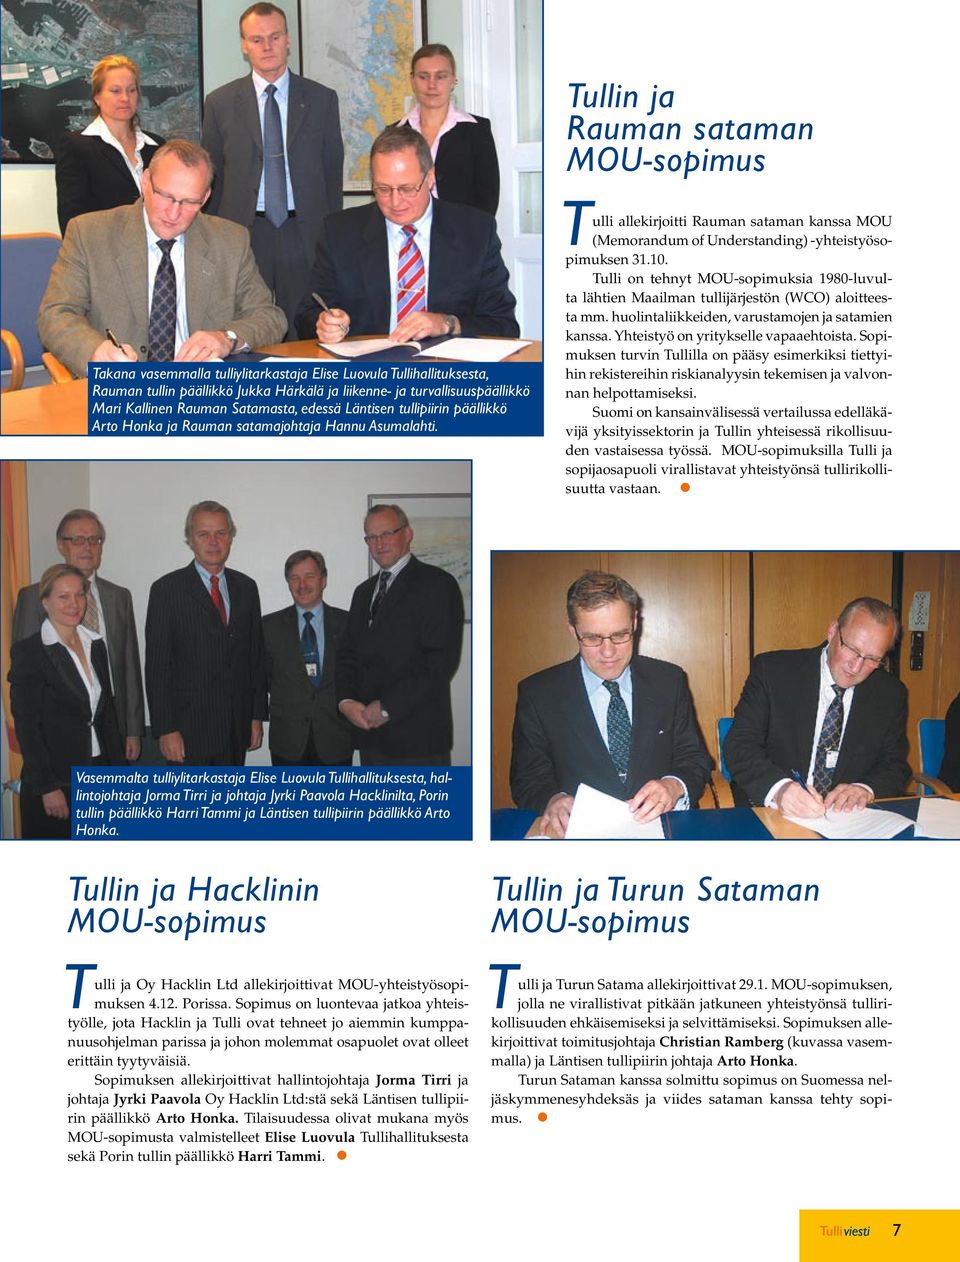 Tulli allekirjoitti Rauman sataman kanssa MOU (Memorandum of Understanding) -yhteistyösopimuksen 31.10.